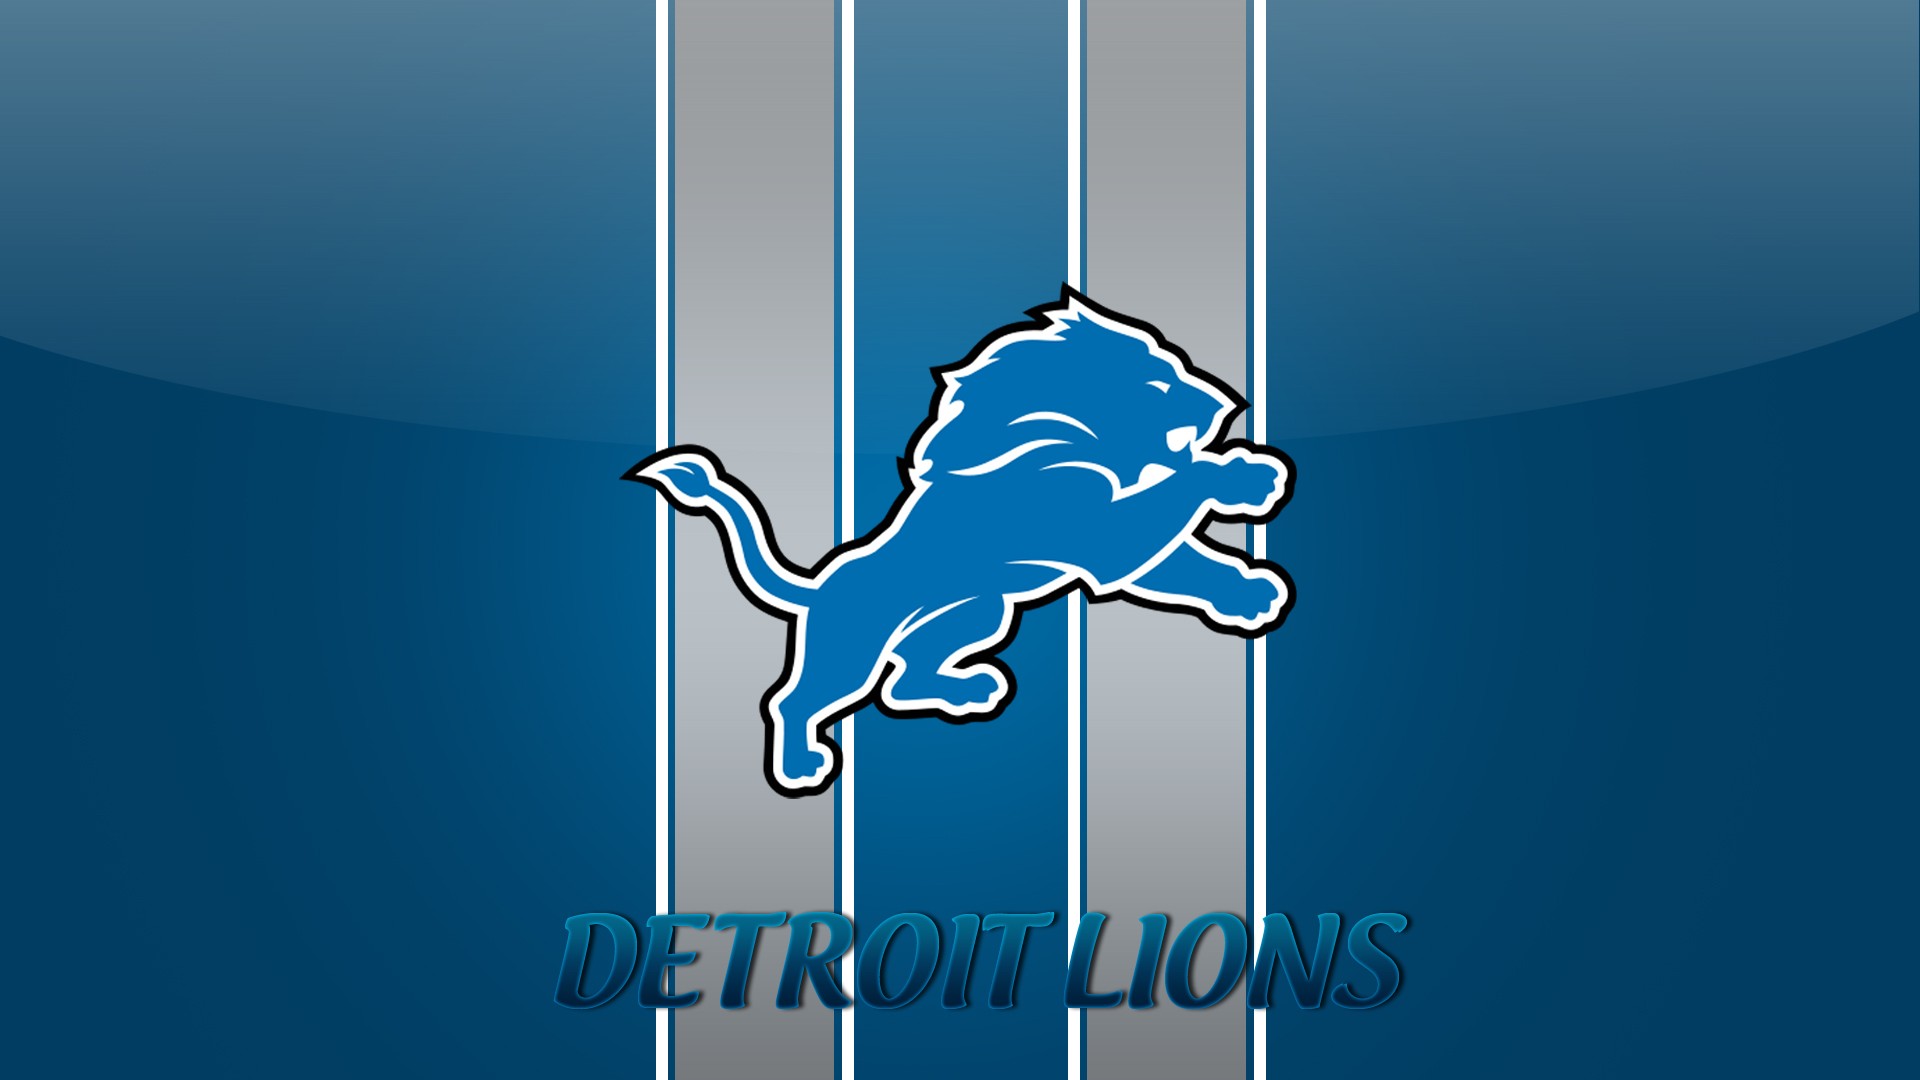 HD Detroit Lions Backgrounds 1920x1080